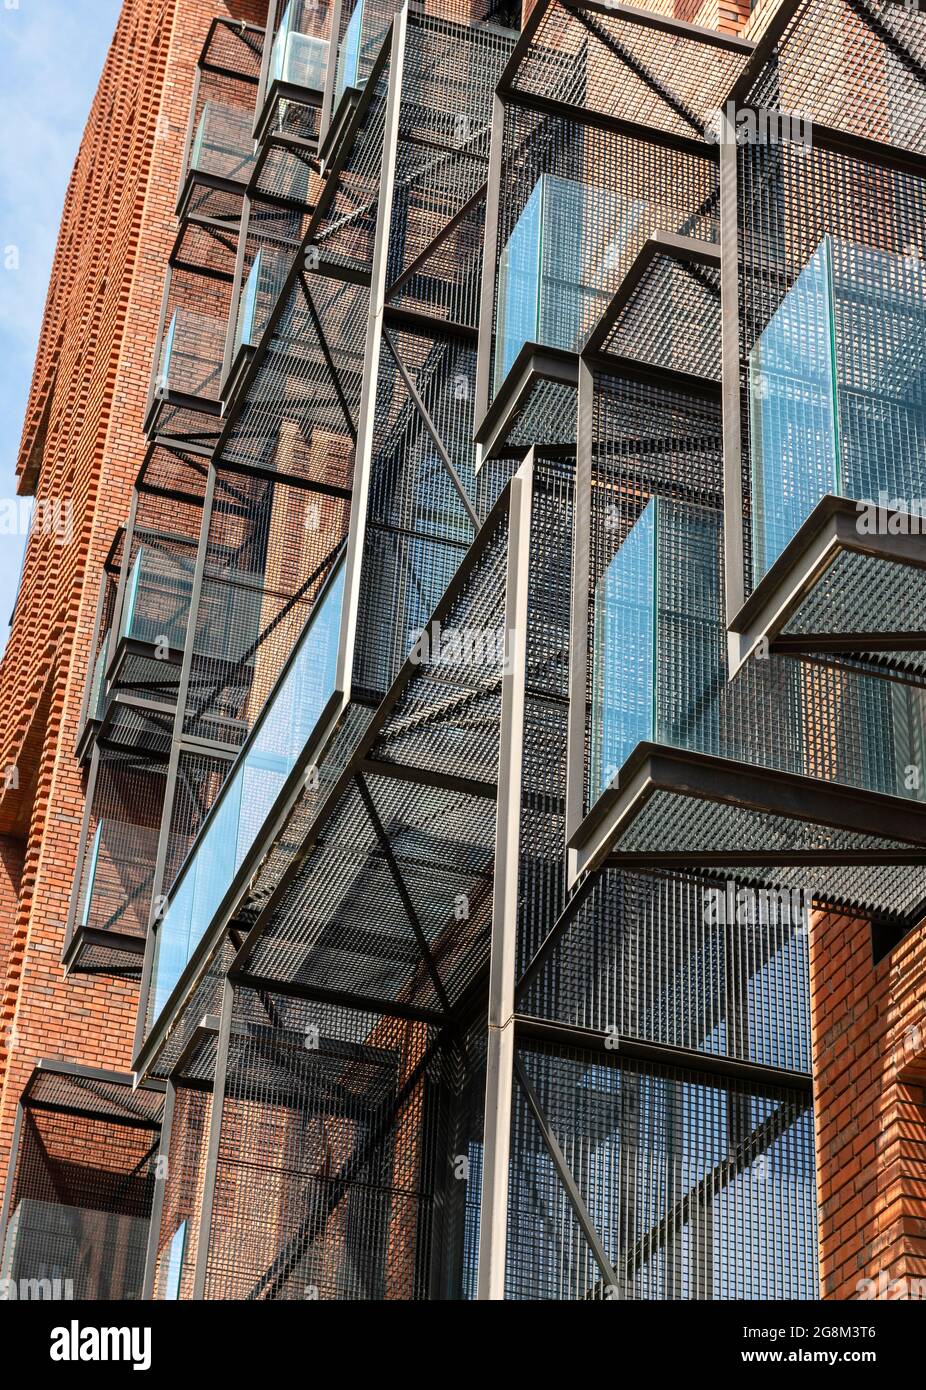 Dettaglio architettonico. Balconi a sbalzo con griglia in metallo e facciata in mattoni per l'edificio residenziale Red Apple a Sofia, Bulgaria Foto Stock